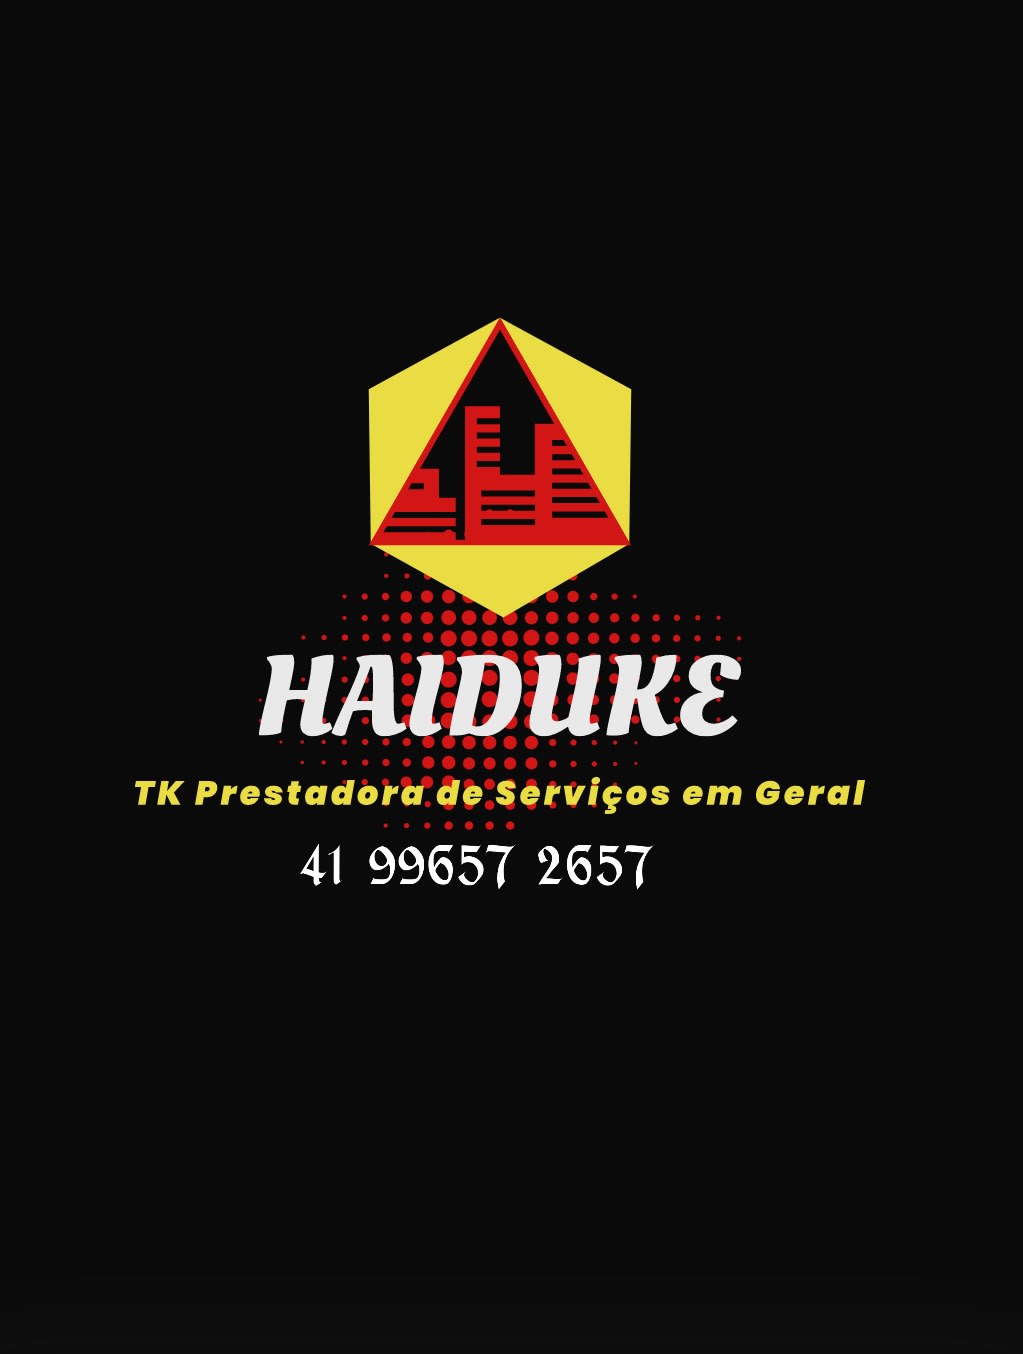 Haiduke TK Prestadora de Serviços em Geral